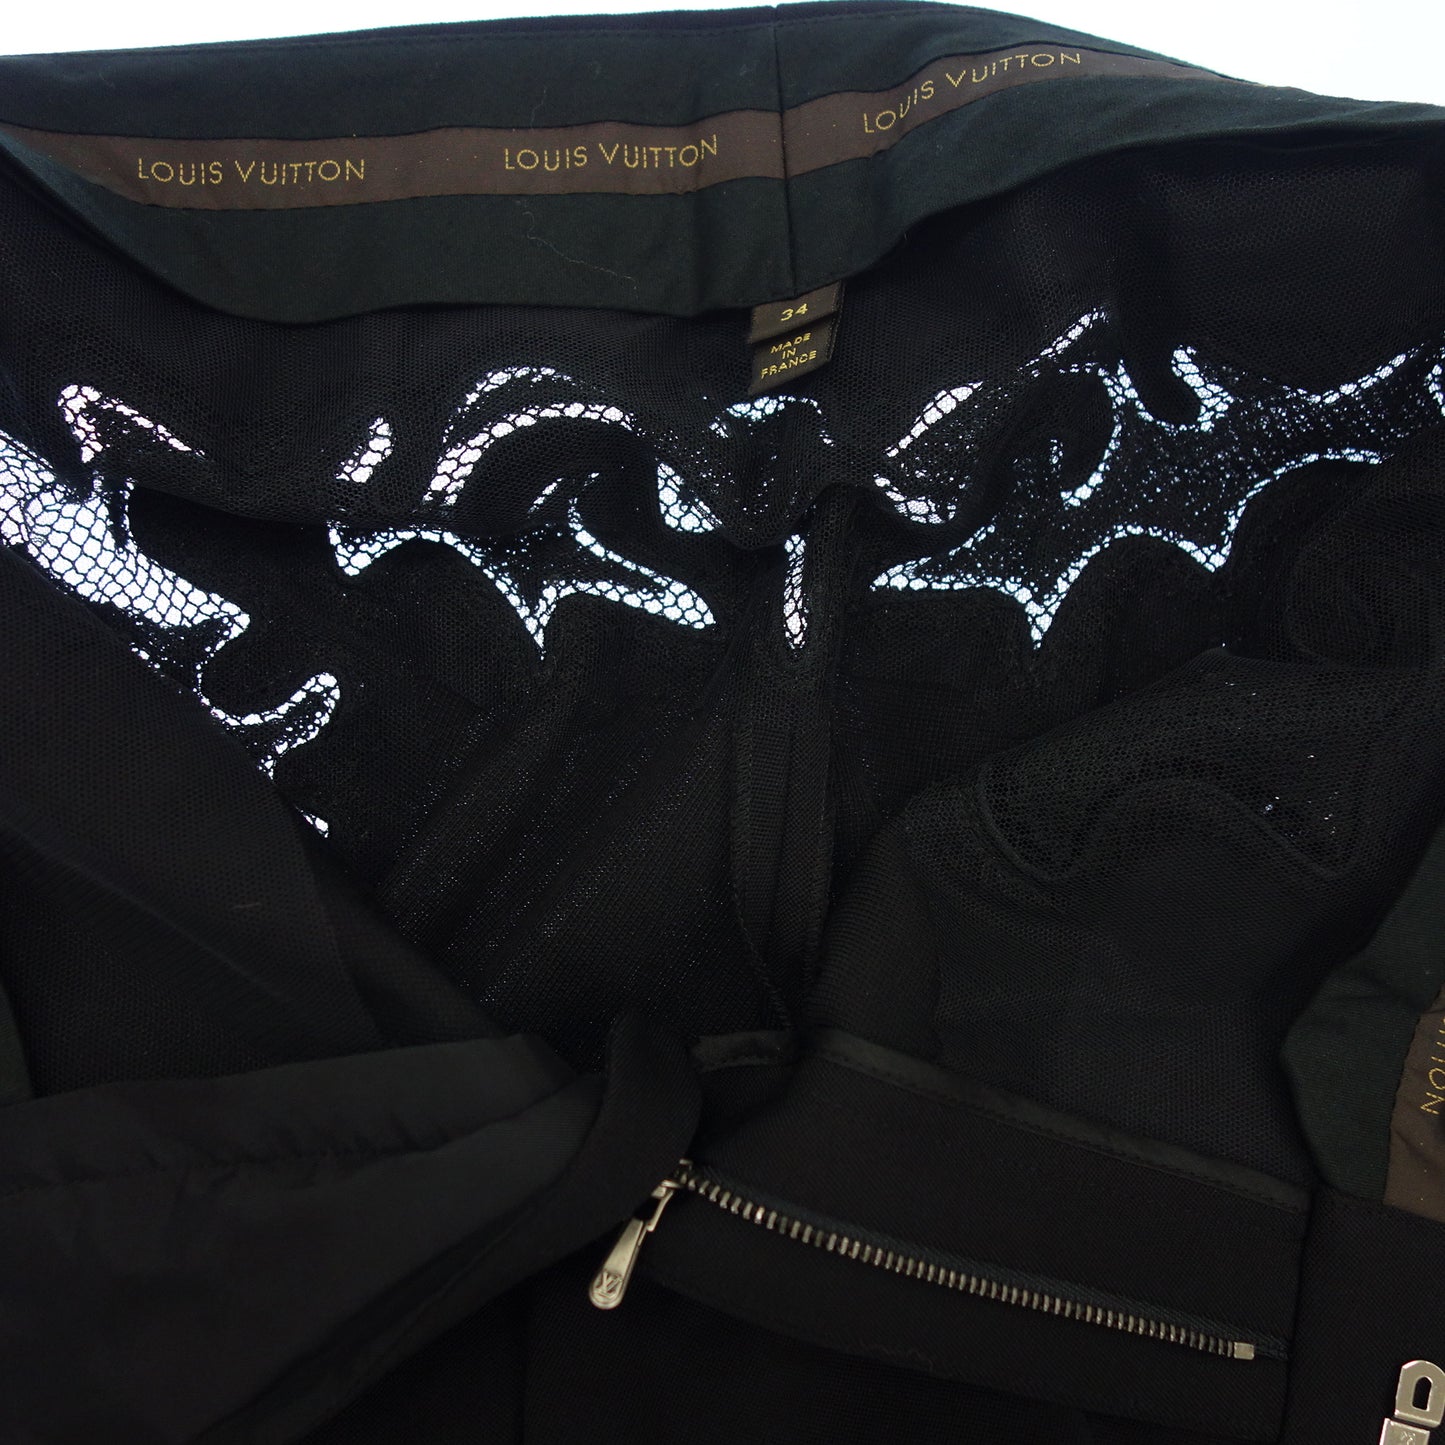 Good condition ◆Louis Vuitton slacks pants lace design sequins ladies black size 34 LOUIS VUITTON [AFB30] 